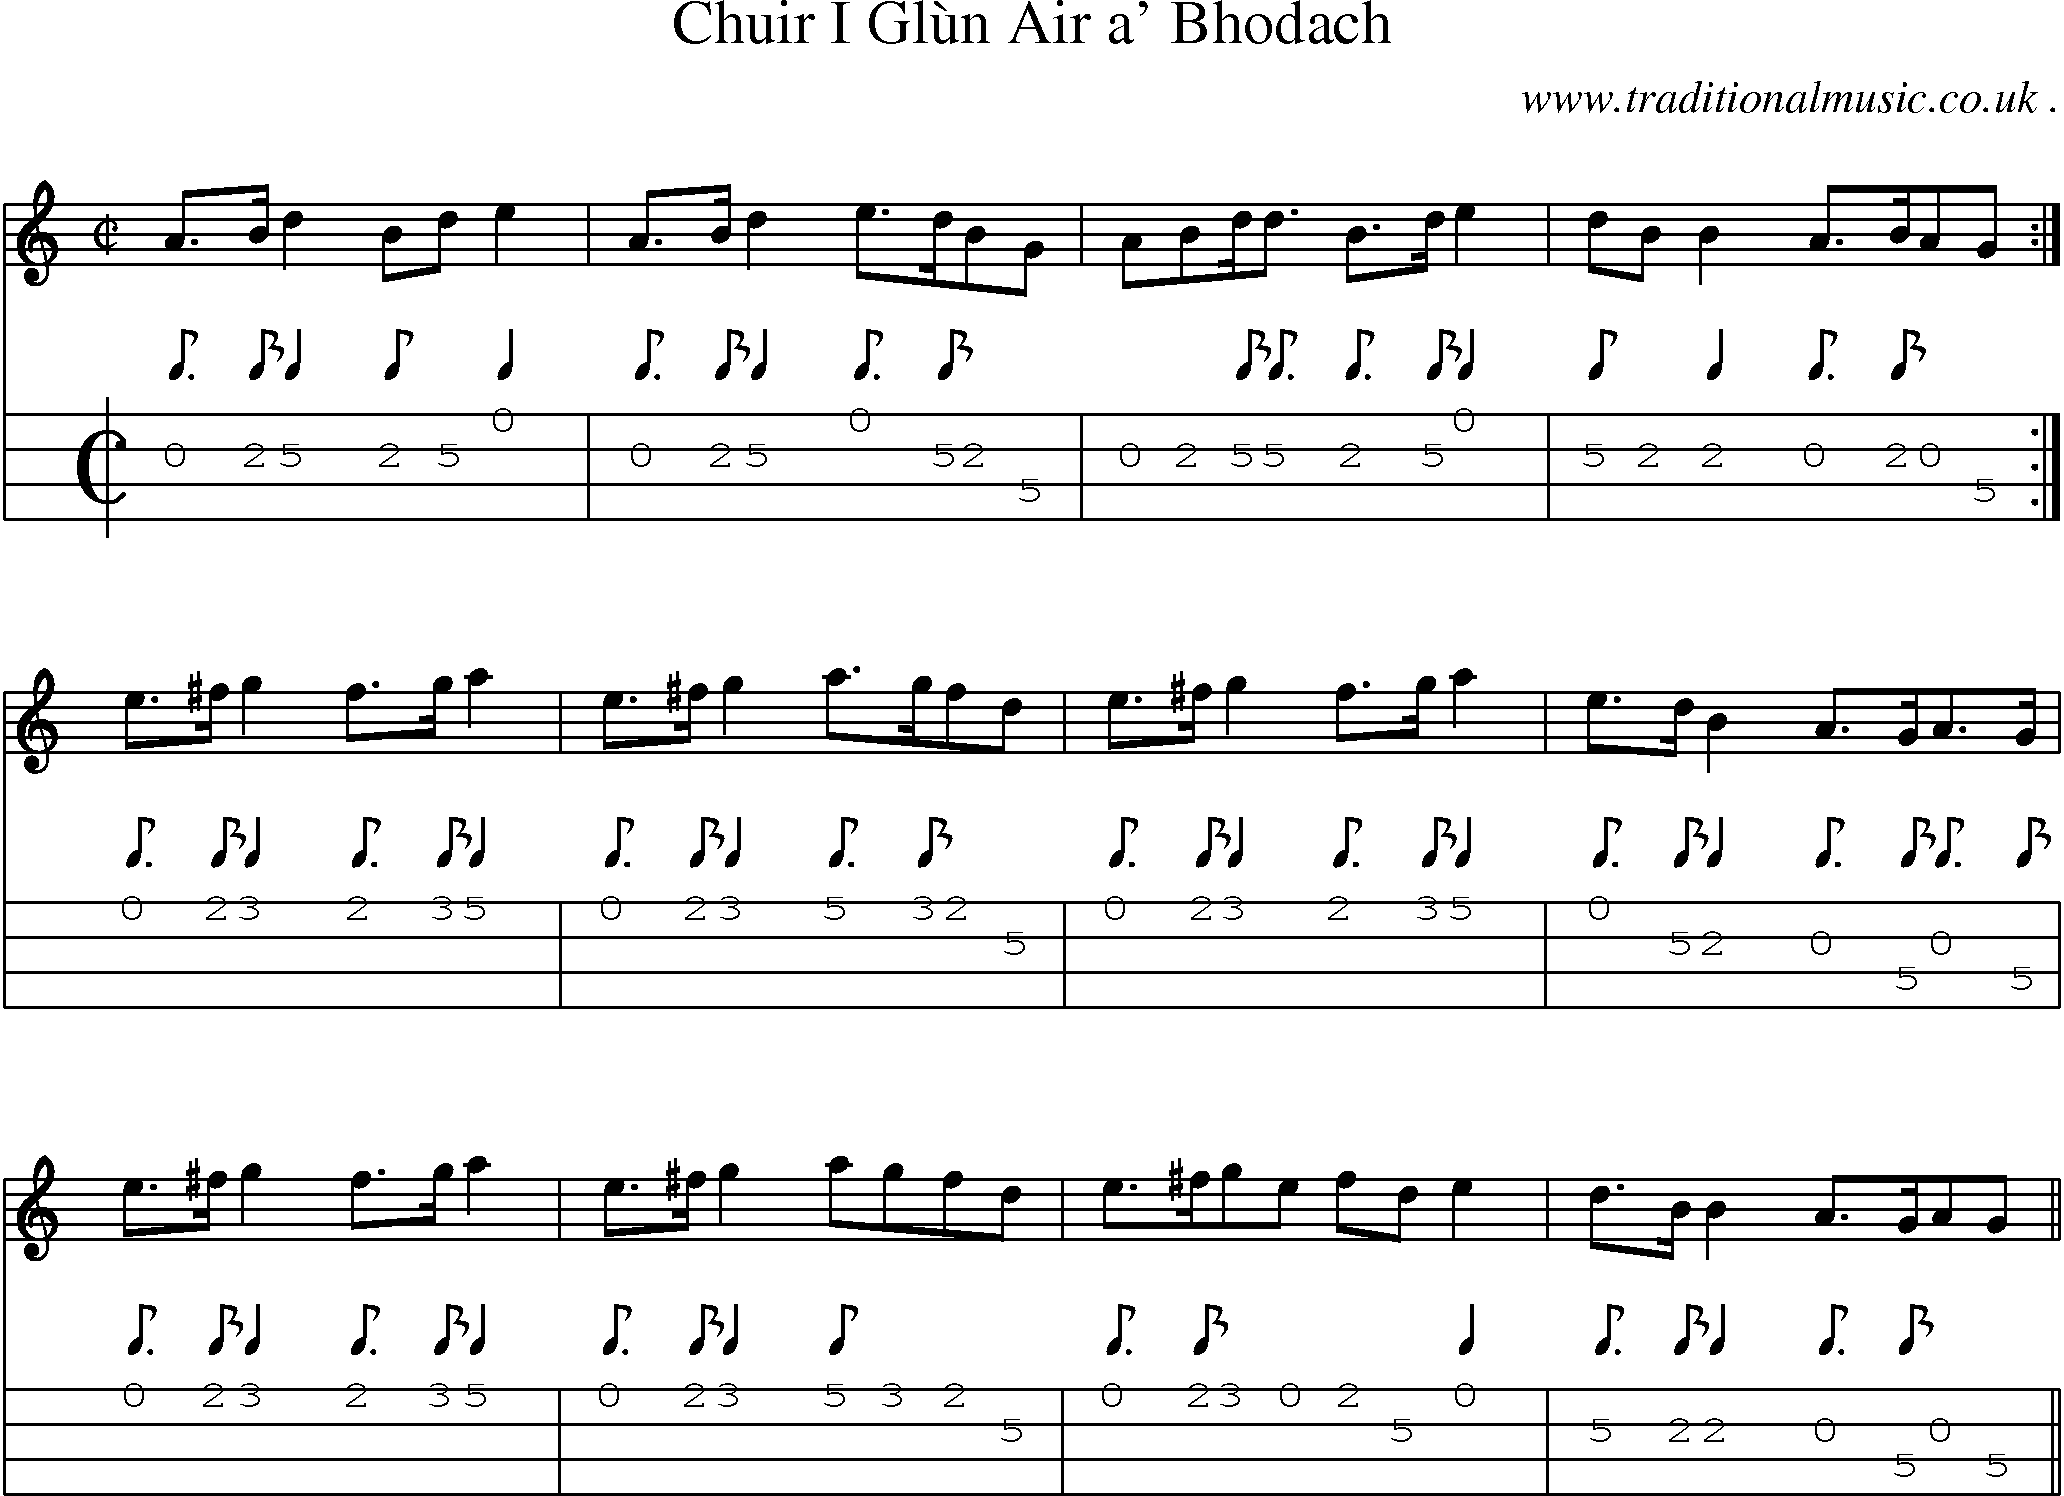 Sheet-music  score, Chords and Mandolin Tabs for Chuir I Glun Air A Bhodach